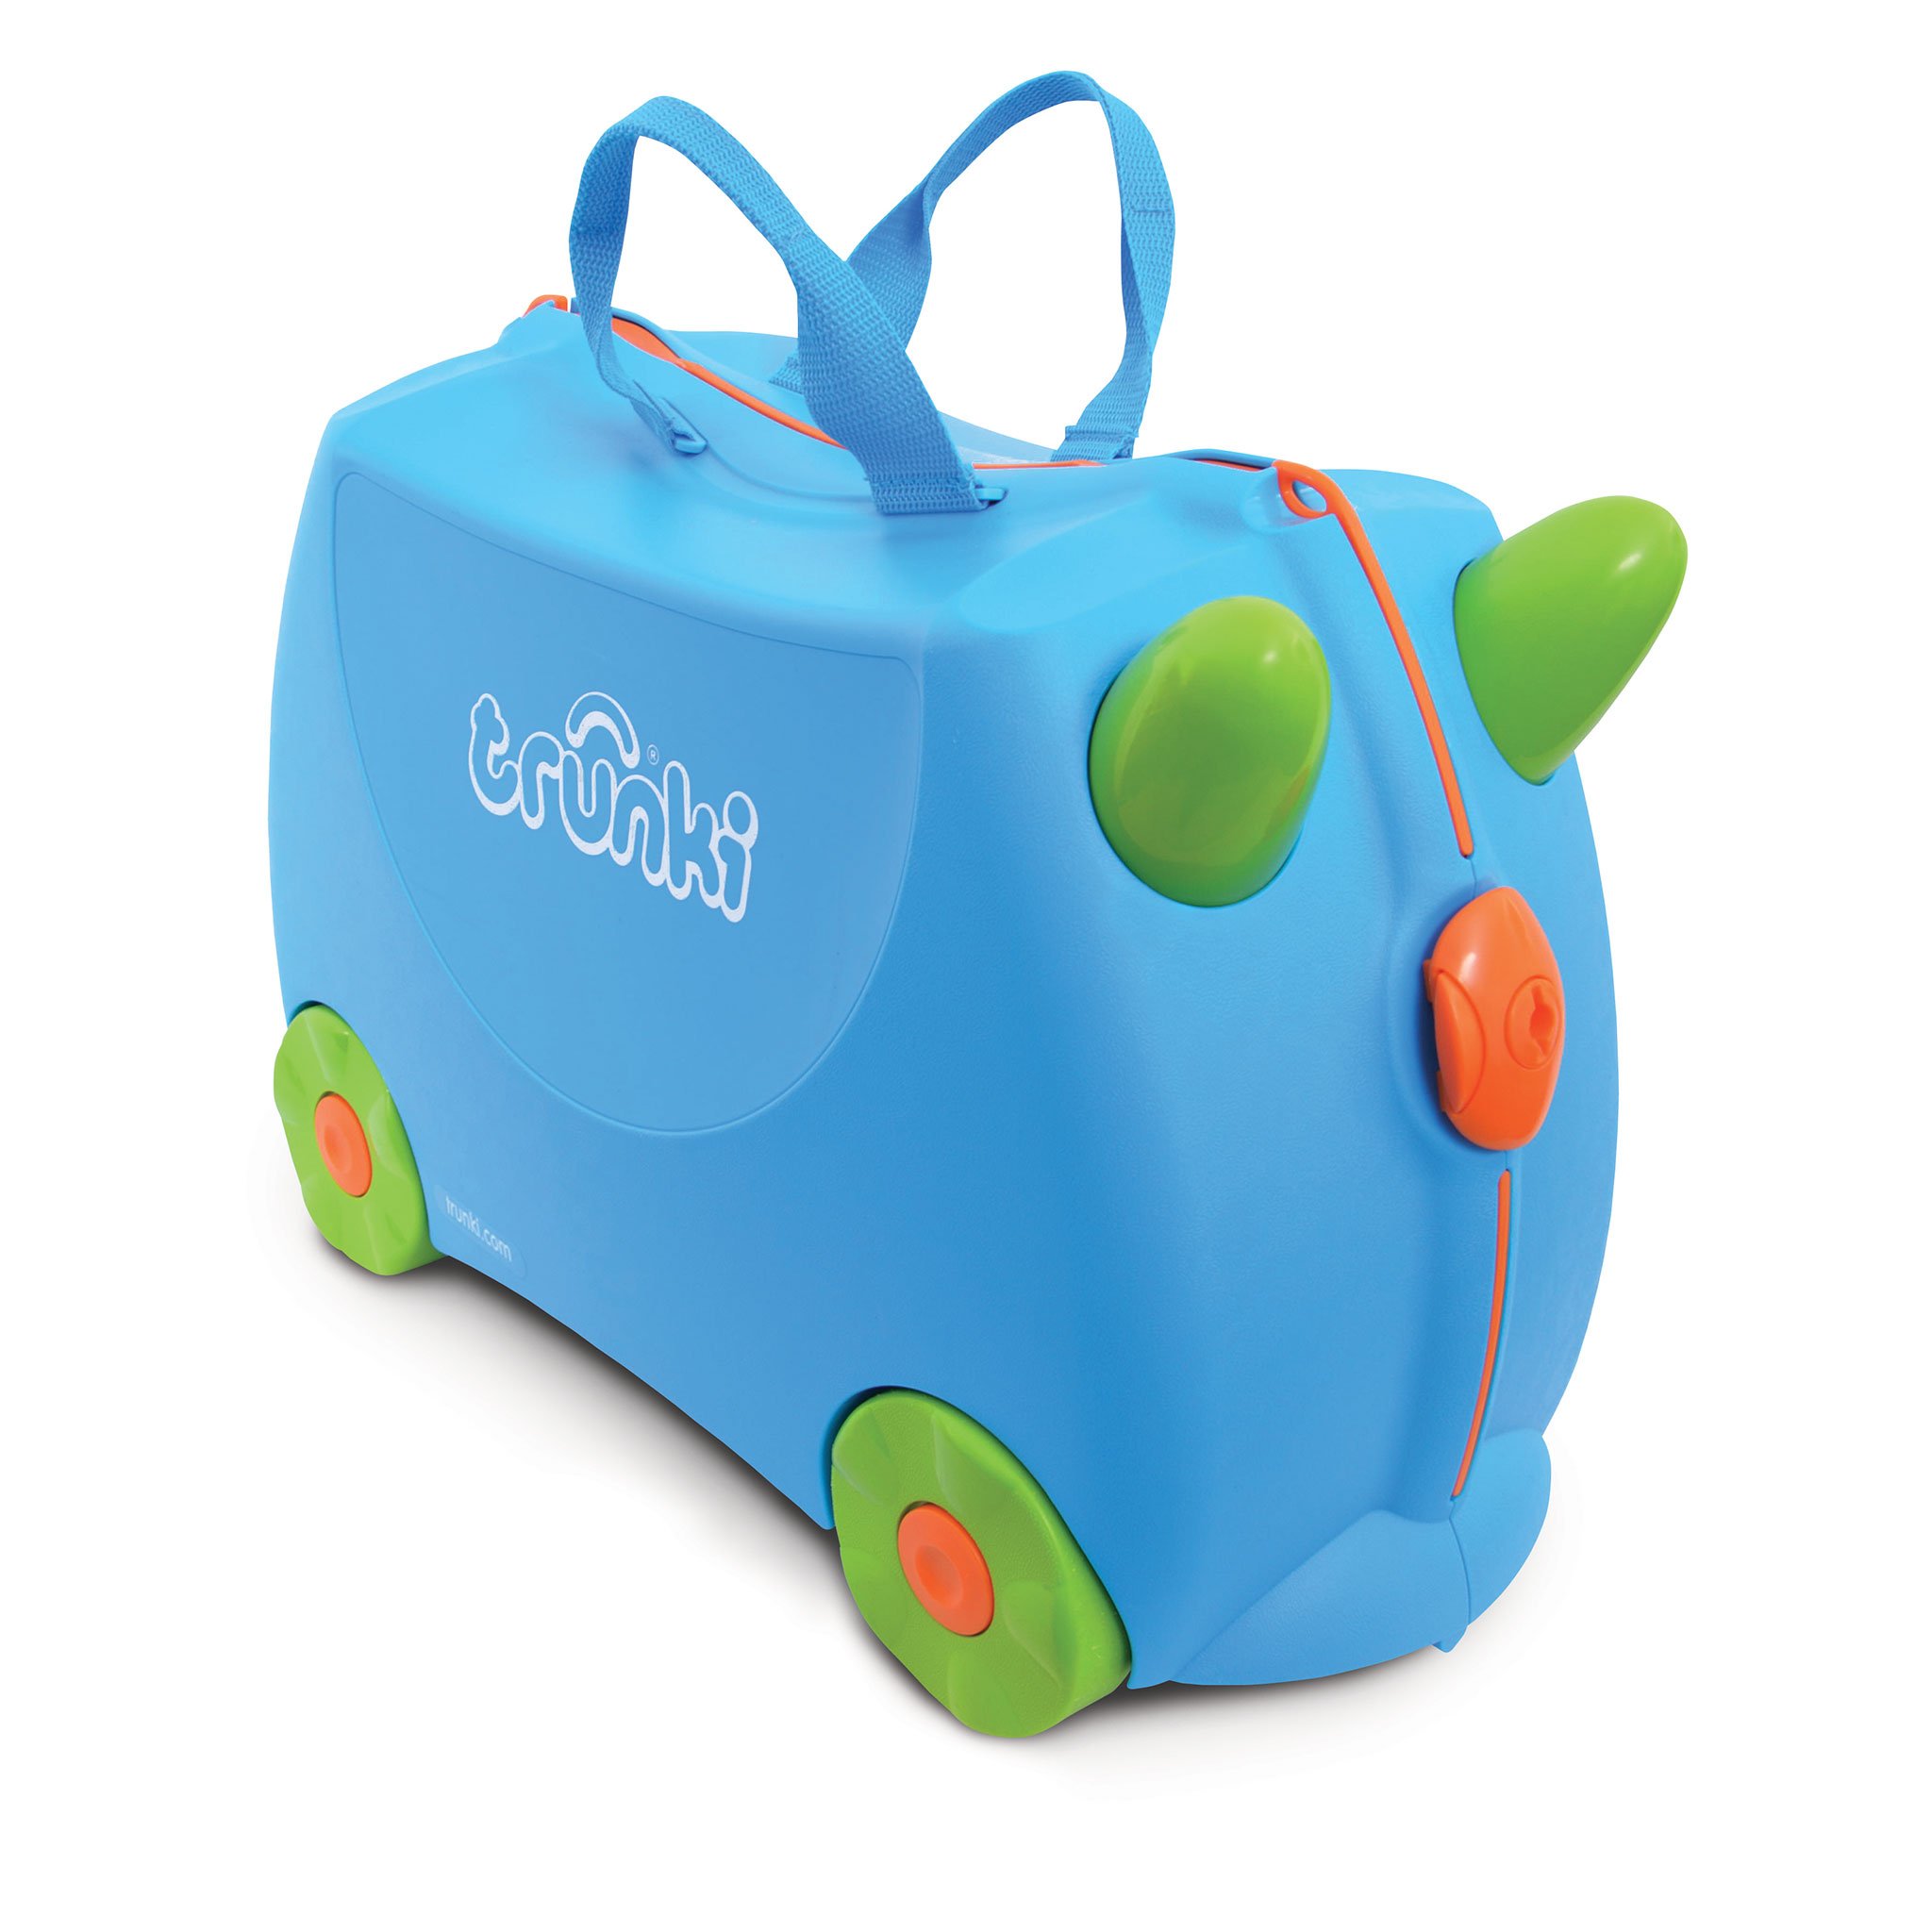 TR0054-GB-trunki-valigetta-cavalcabile-traino-bambini-viaggiare-colorata.jpg